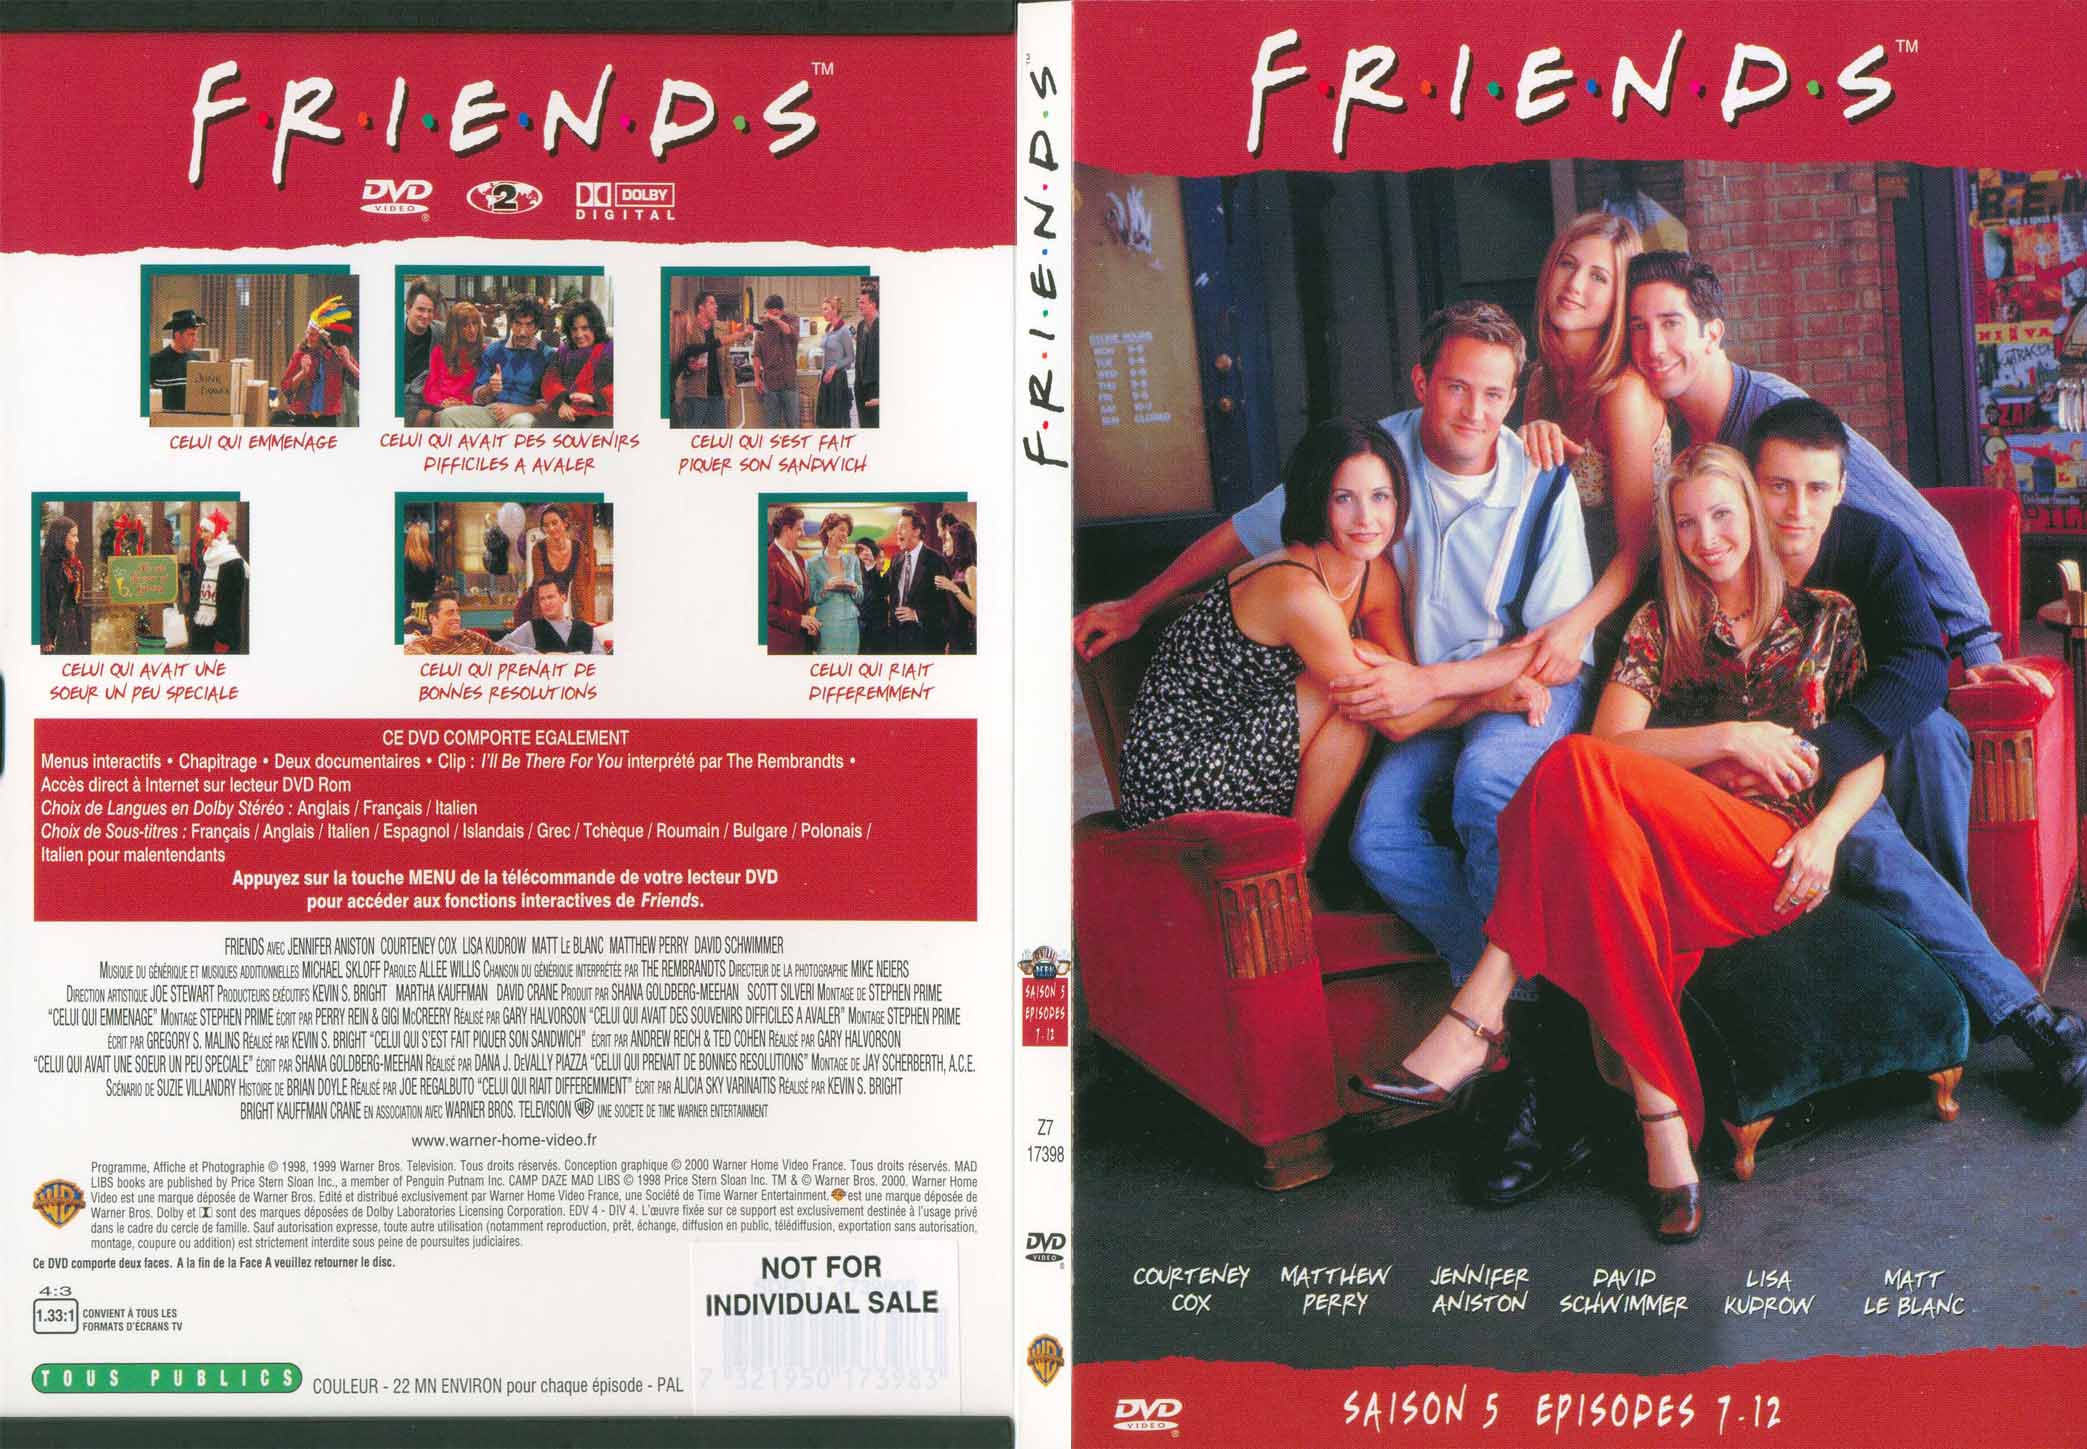 Jaquette DVD Friends saison 5 dvd 2 - SLIM